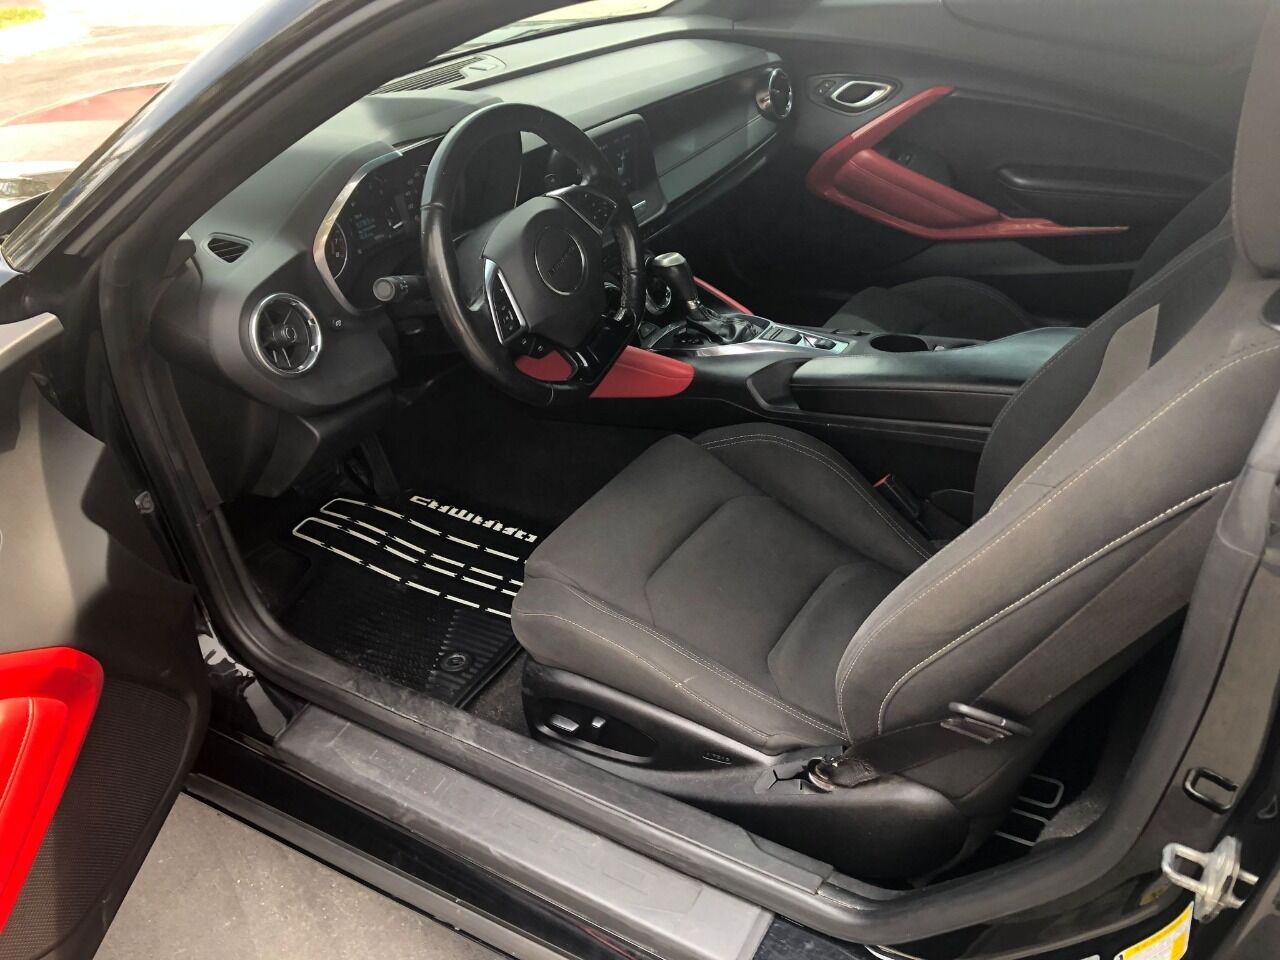 2018 CHEVROLET Camaro Coupe - $17,500